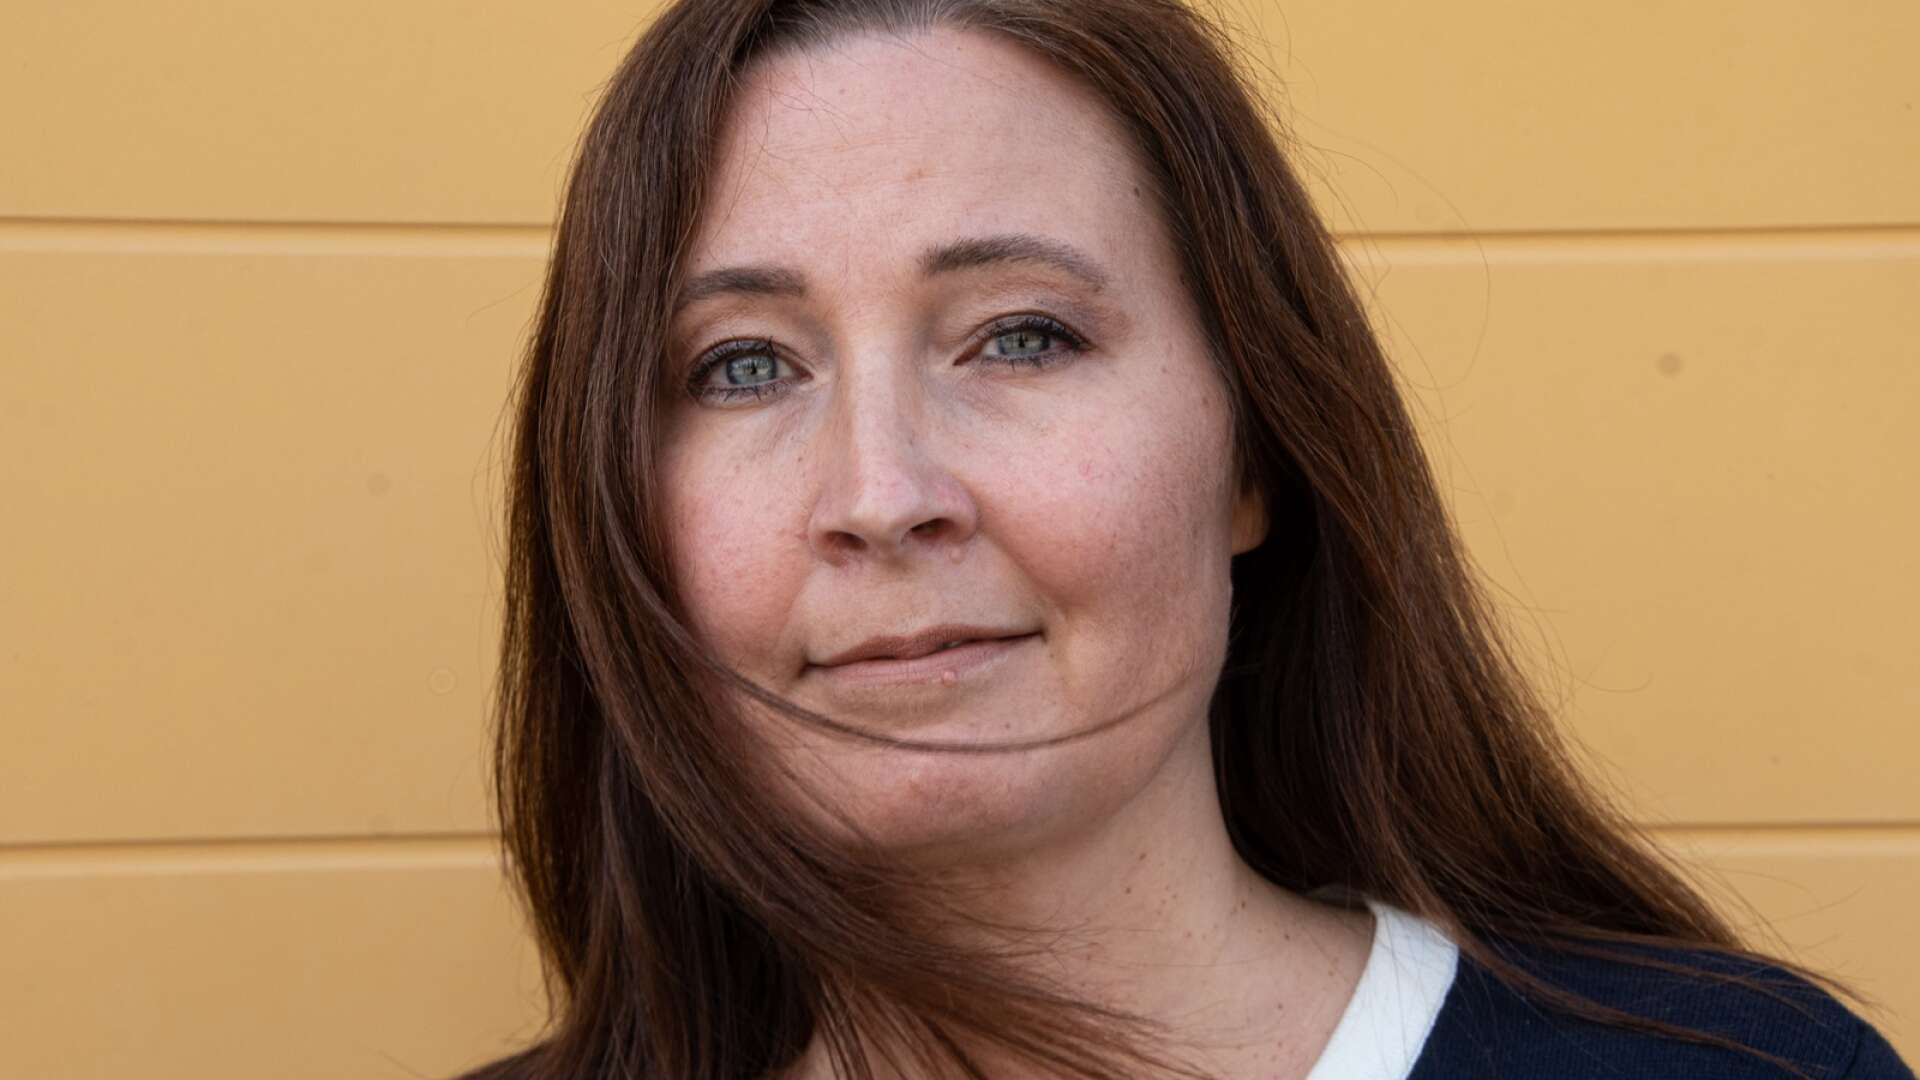 Linn Brandström kommer med all sannolikhet att väljas till regionråd för oppositionen i Västra Götaland. Men blir hon vald att leda Töreboda kommun, kommer hon lämna uppdraget i regionen.